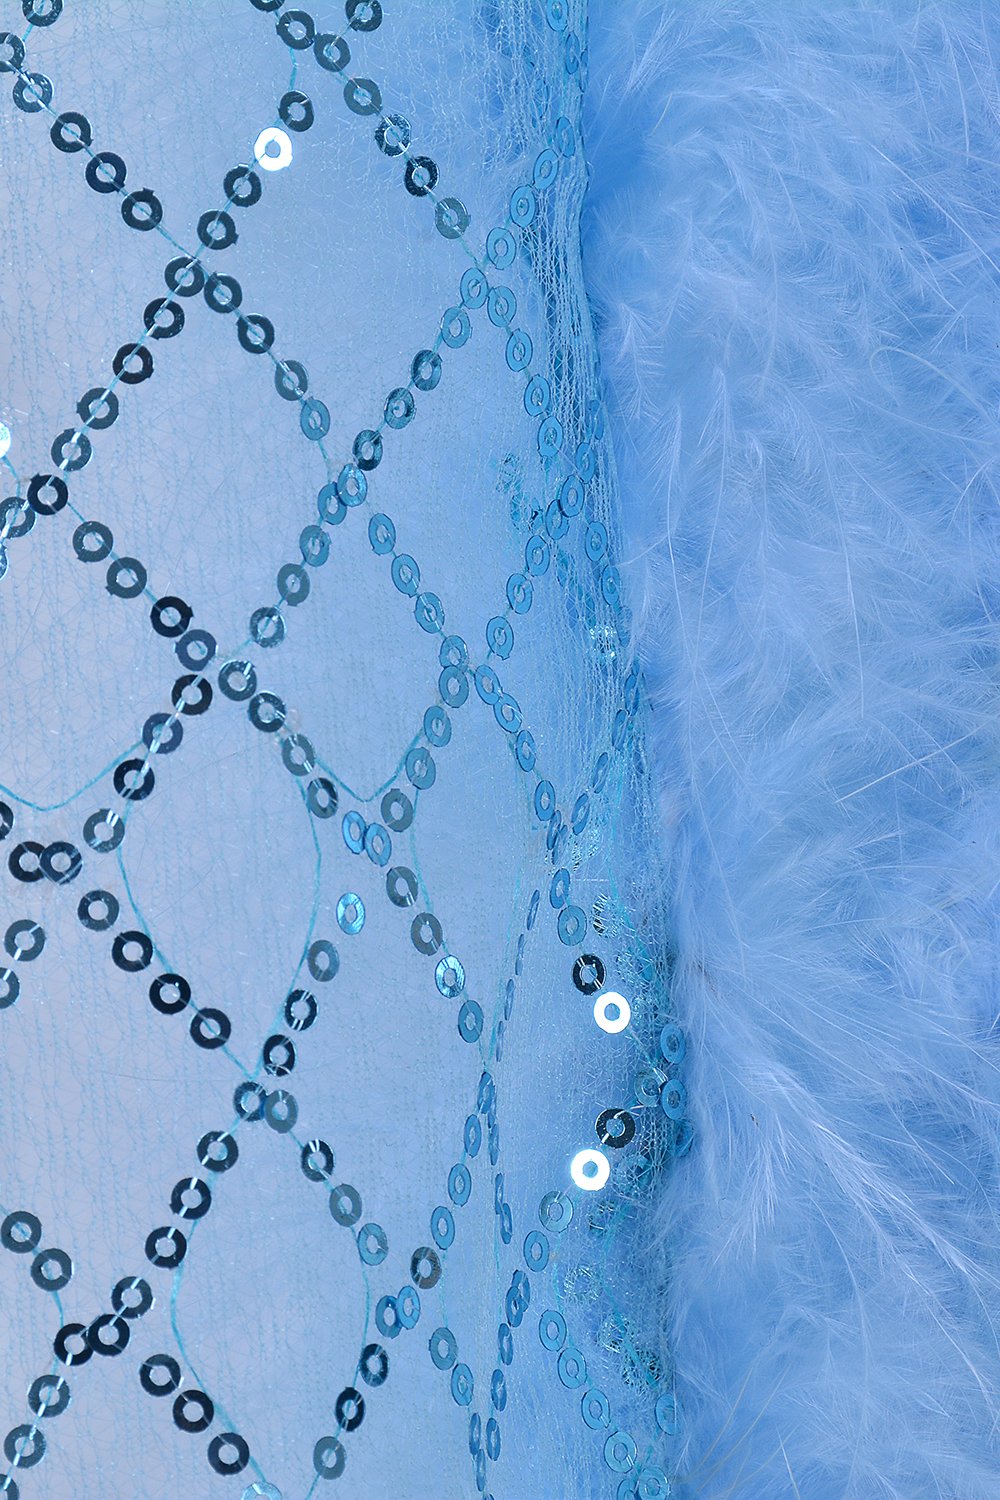 Fuzzy Kimono - Cotton Candy Blue